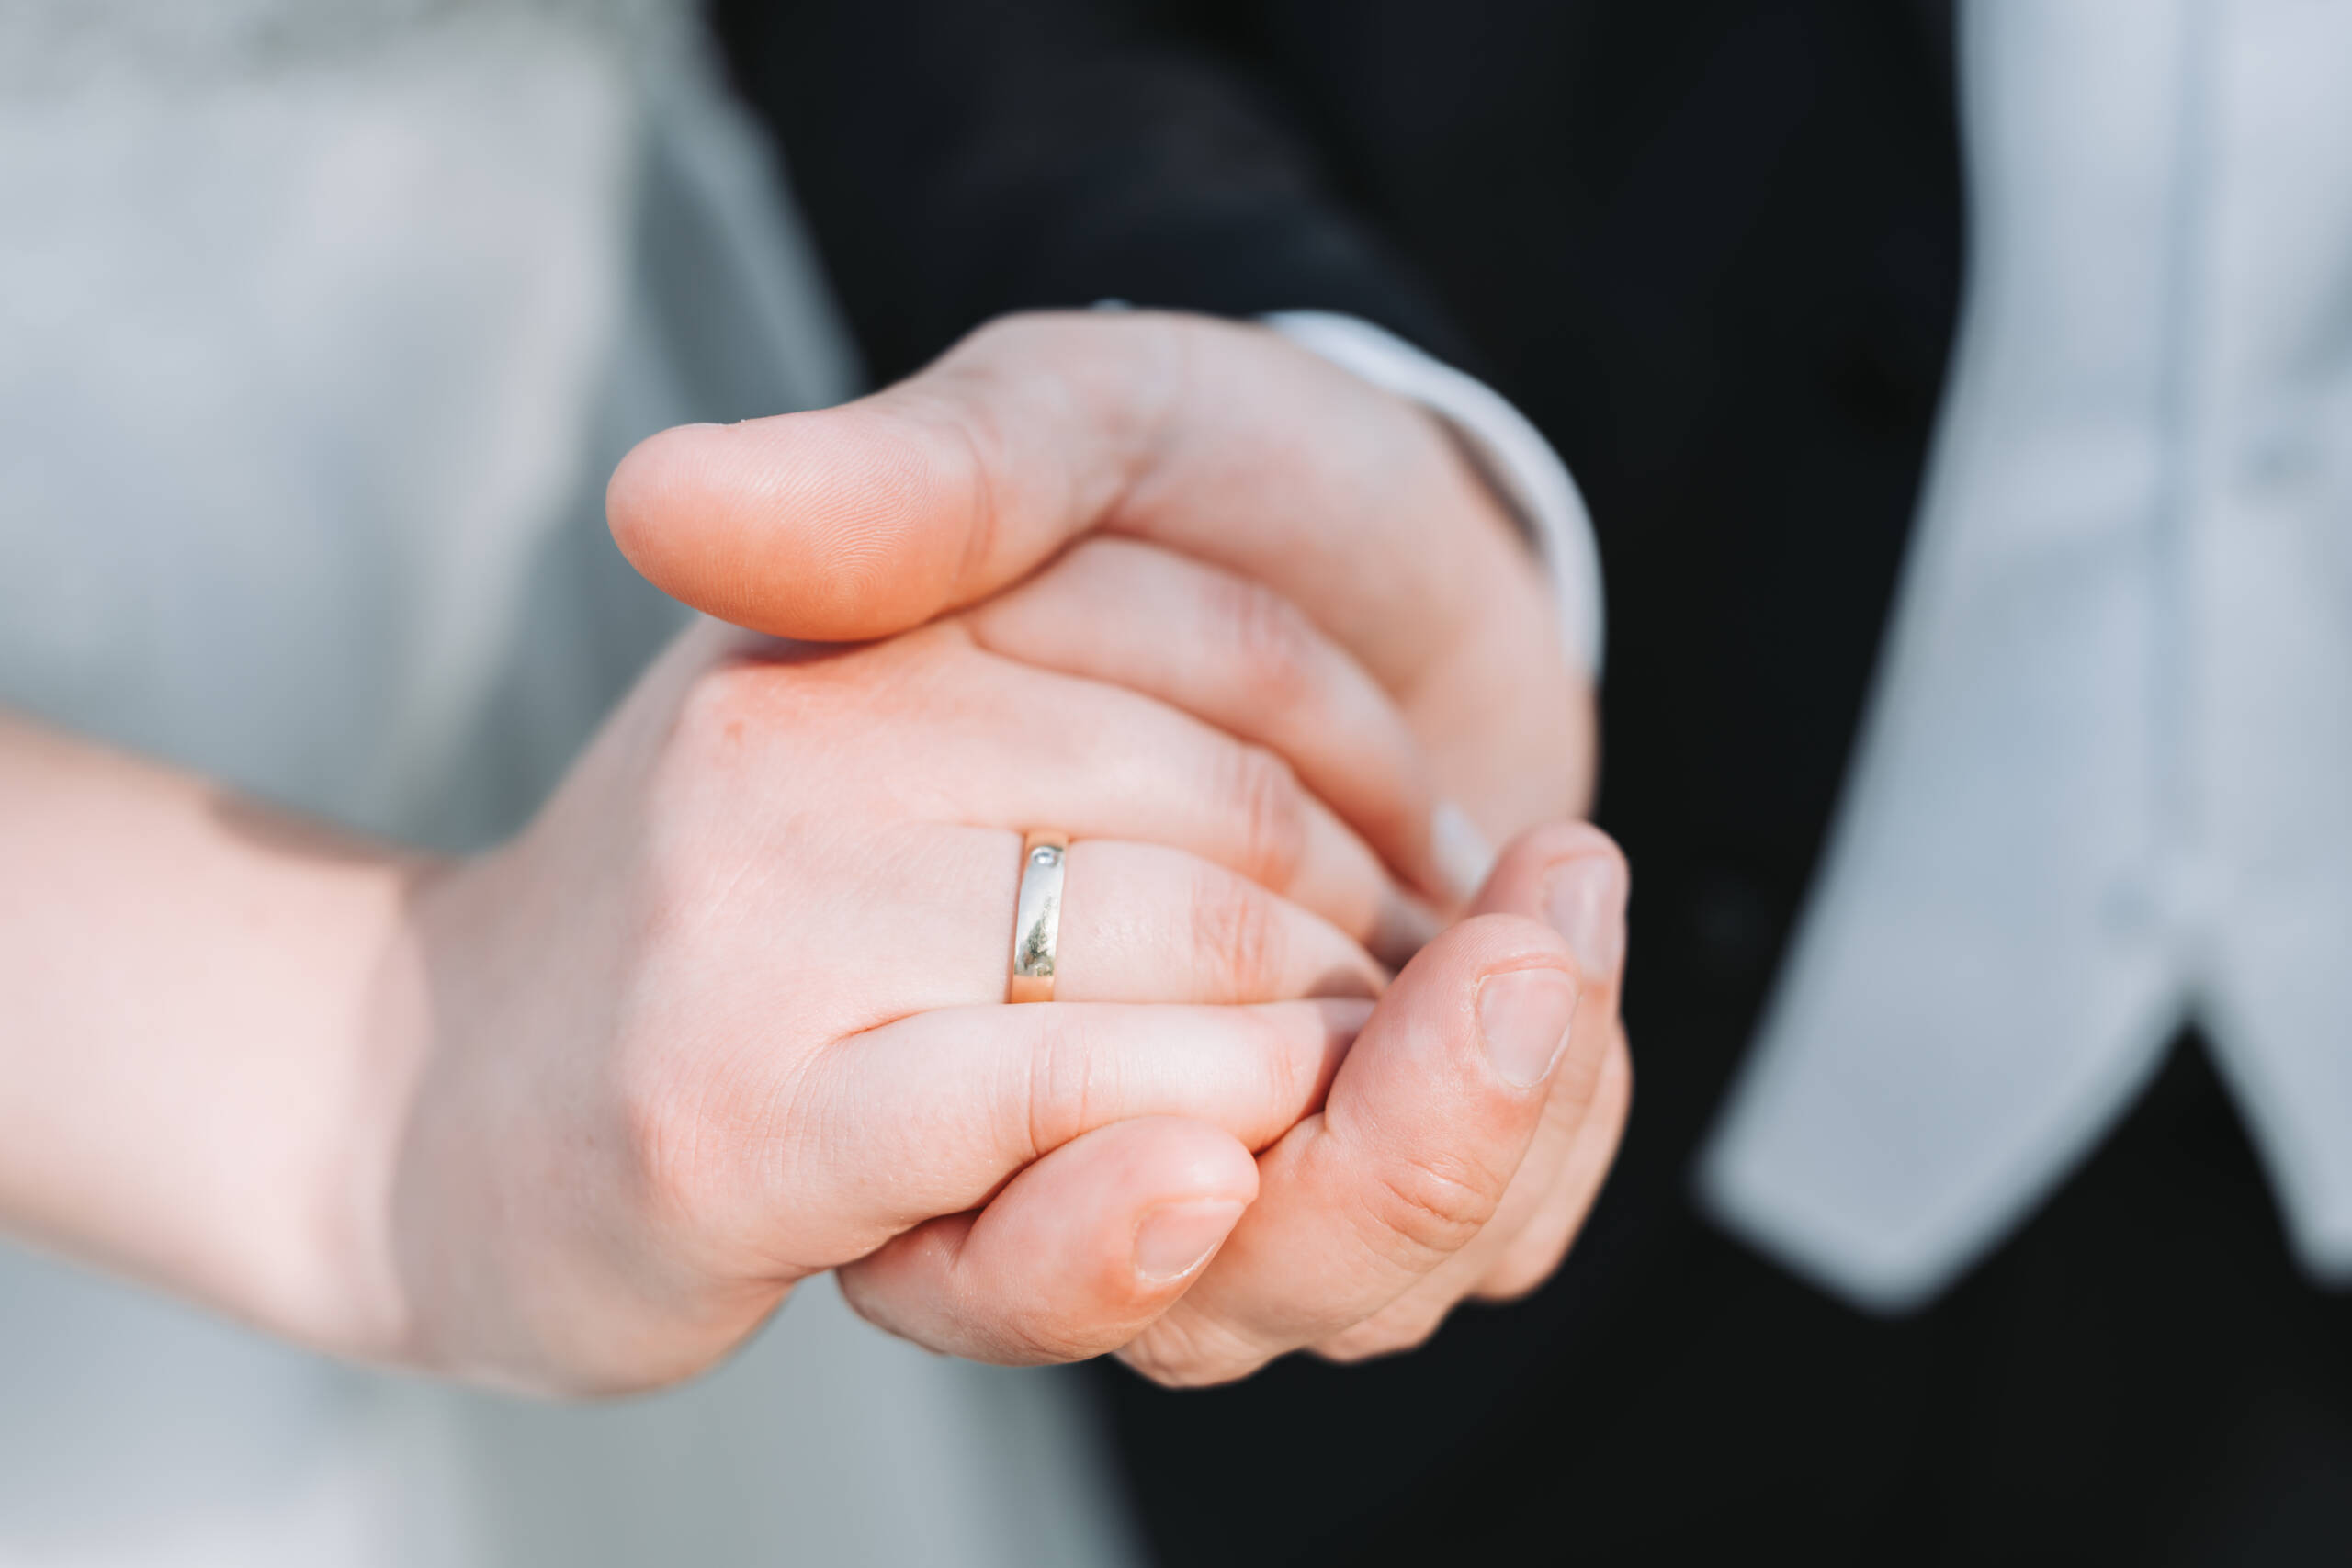 Ein frisch verheiratetes Brautpaar hält Hände und zeigt dabei den Ring am Ringfinger der Braut.